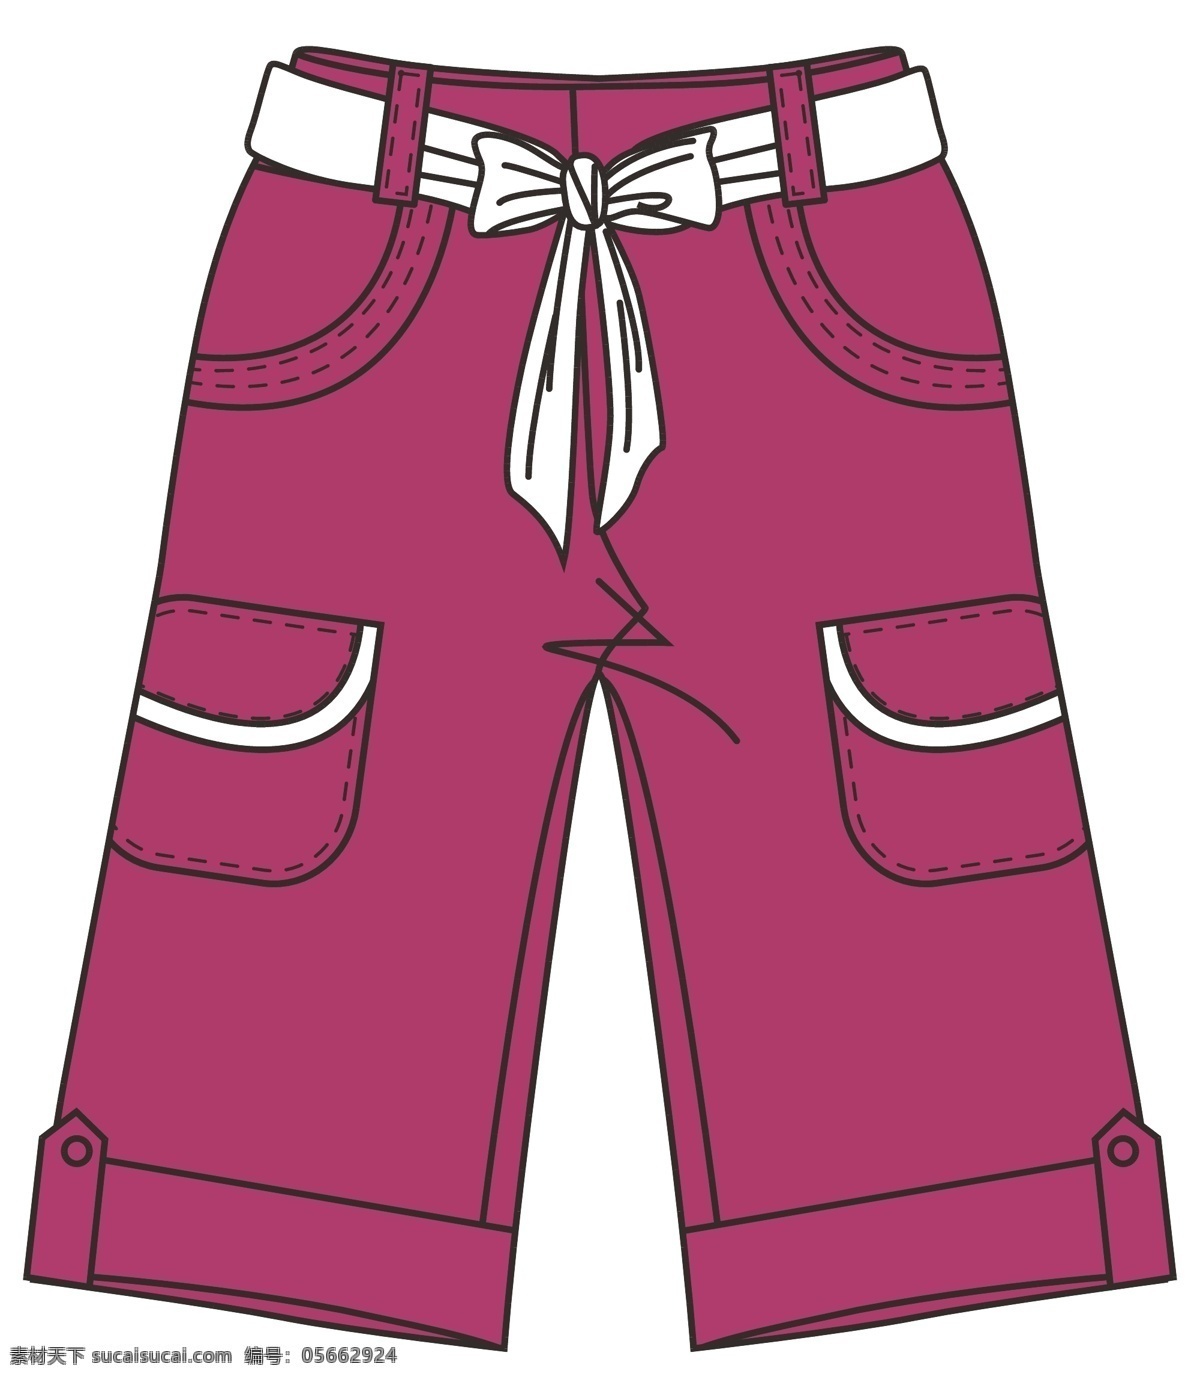 女童 裤子 版 型 服装设计 女裤 女童裤子版型 版型 矢量 其他服装素材